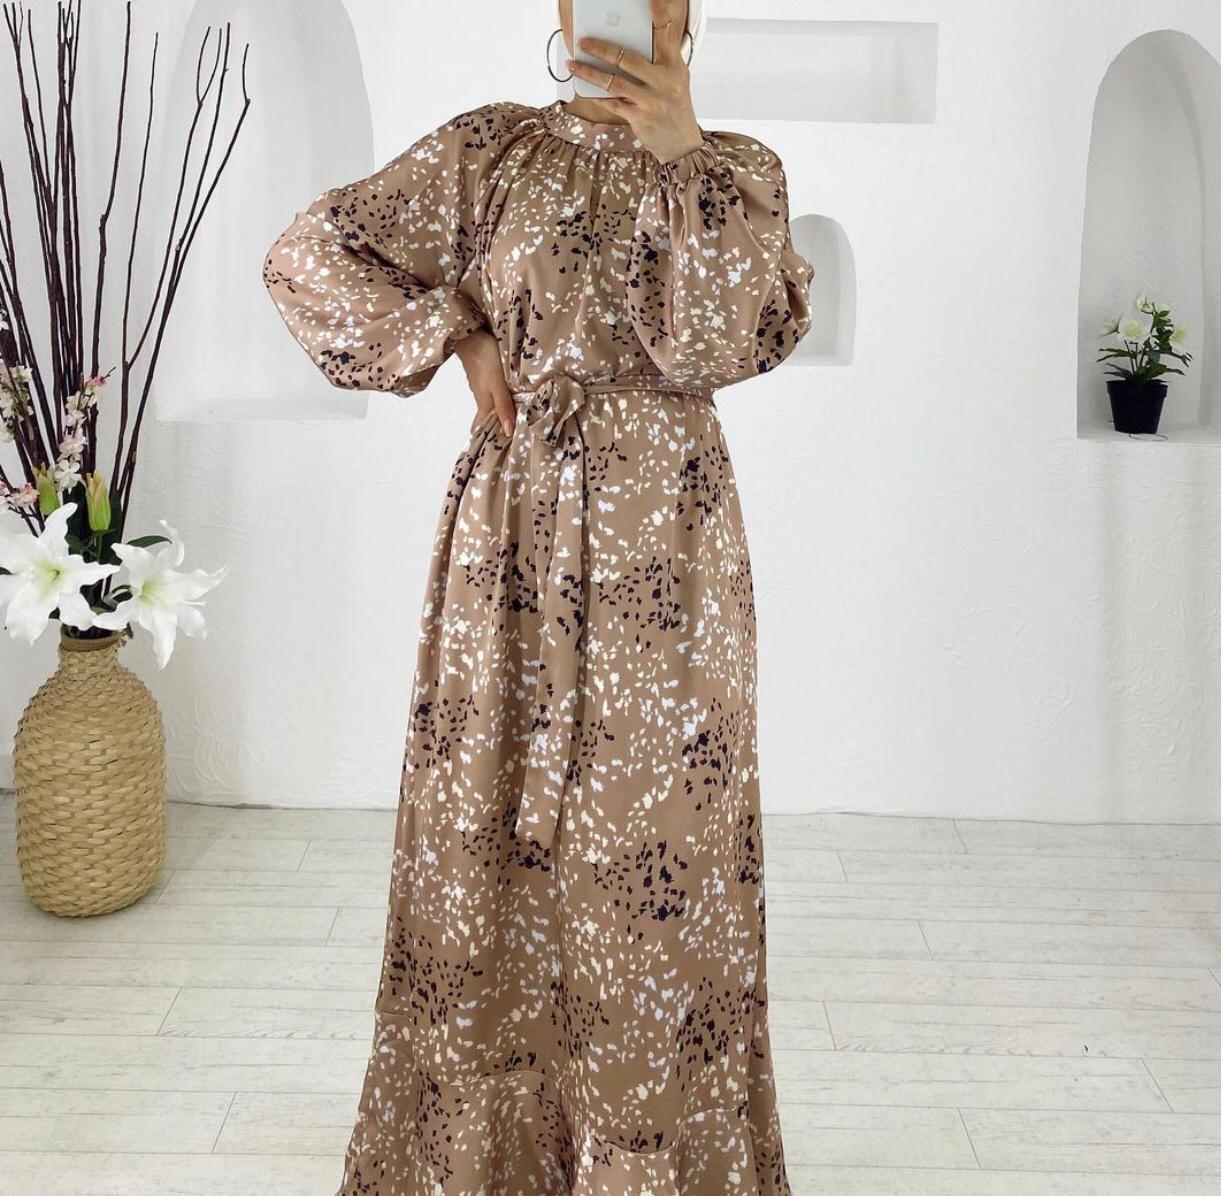 Saraya Mastour bronze dress